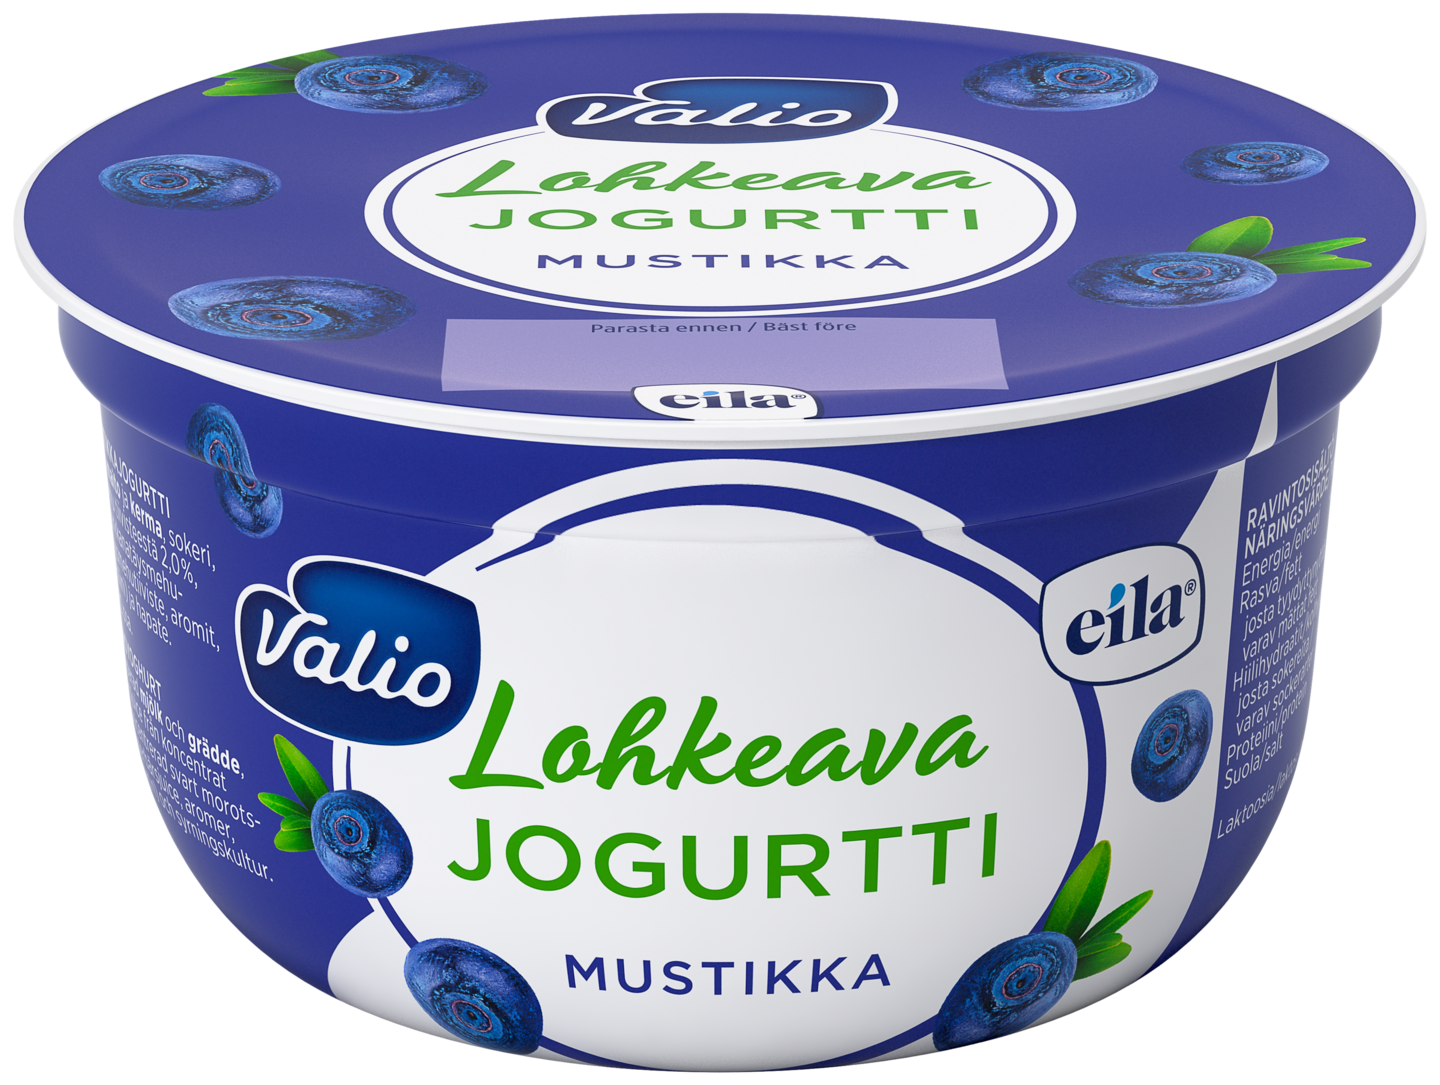 Valio lohkeava jogurtti 150g mustikka laktoositon